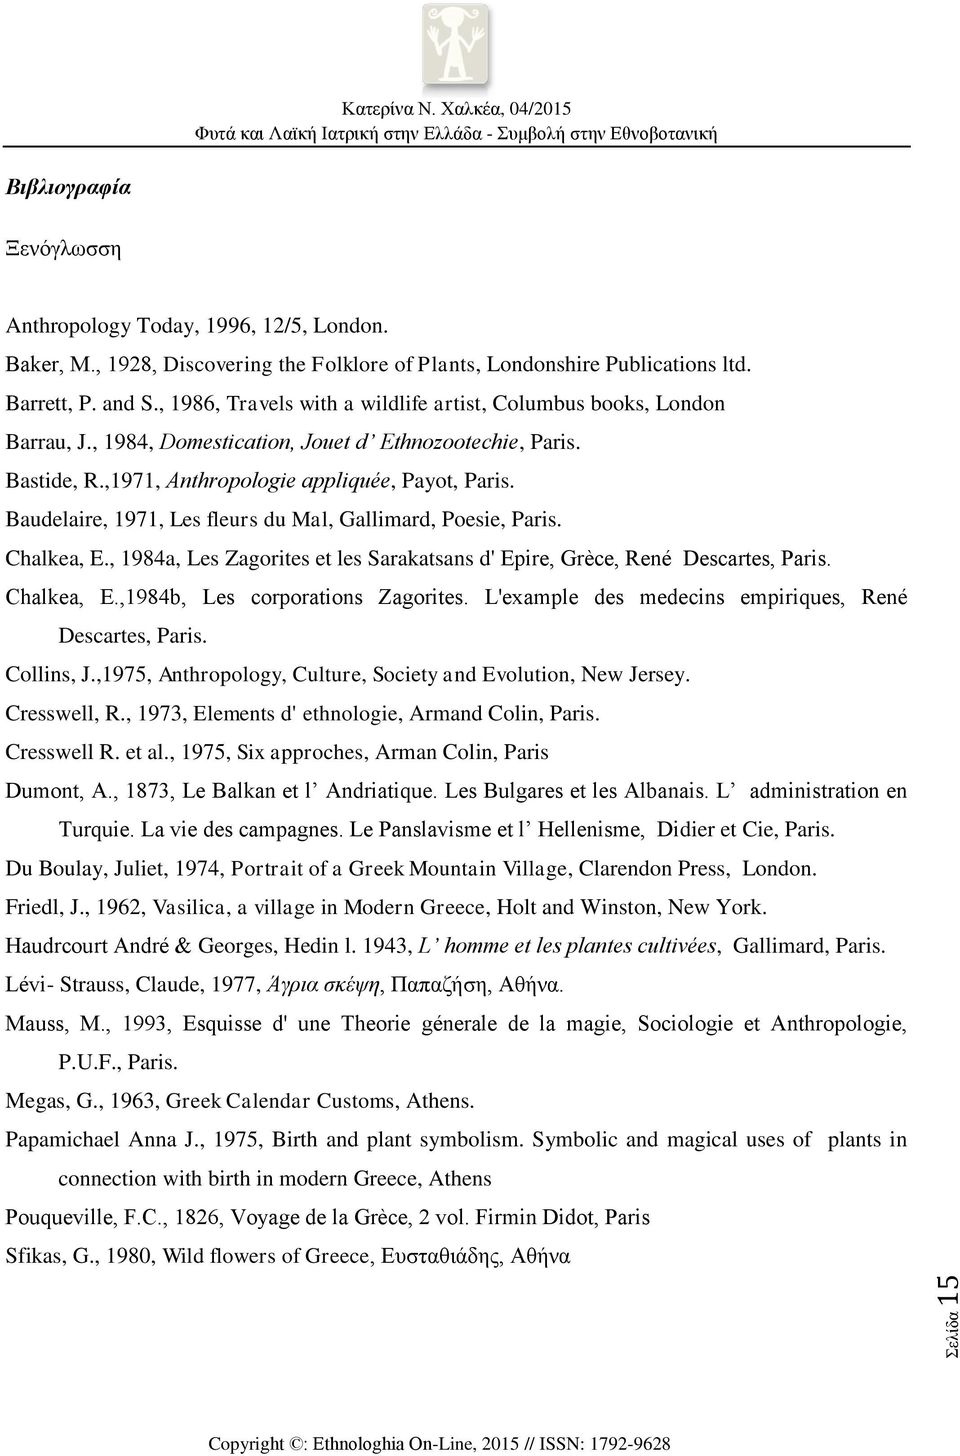 Baudelaire, 1971, Les fleurs du Mal, Gallimard, Poesie, Paris. Chalkea, E., 1984a, Les Zagorites et les Sarakatsans d' Epire, Grèce, René Descartes, Paris. Chalkea, E.,1984b, Les corporations Zagorites.